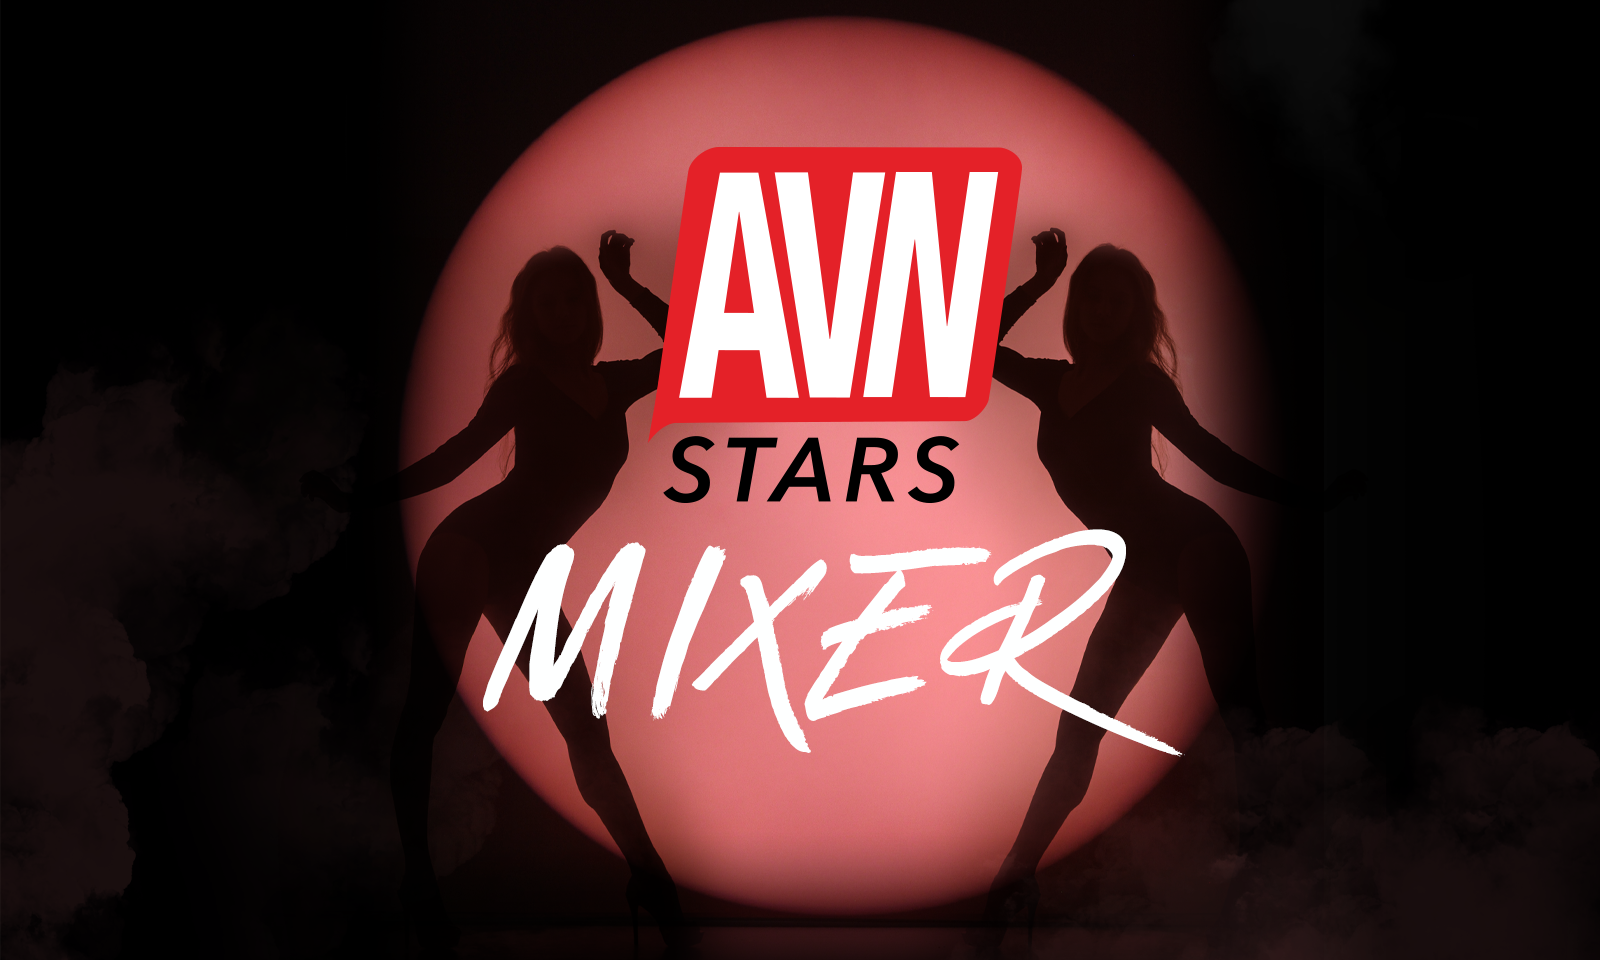 AVN Stars Mixer Set for October 18